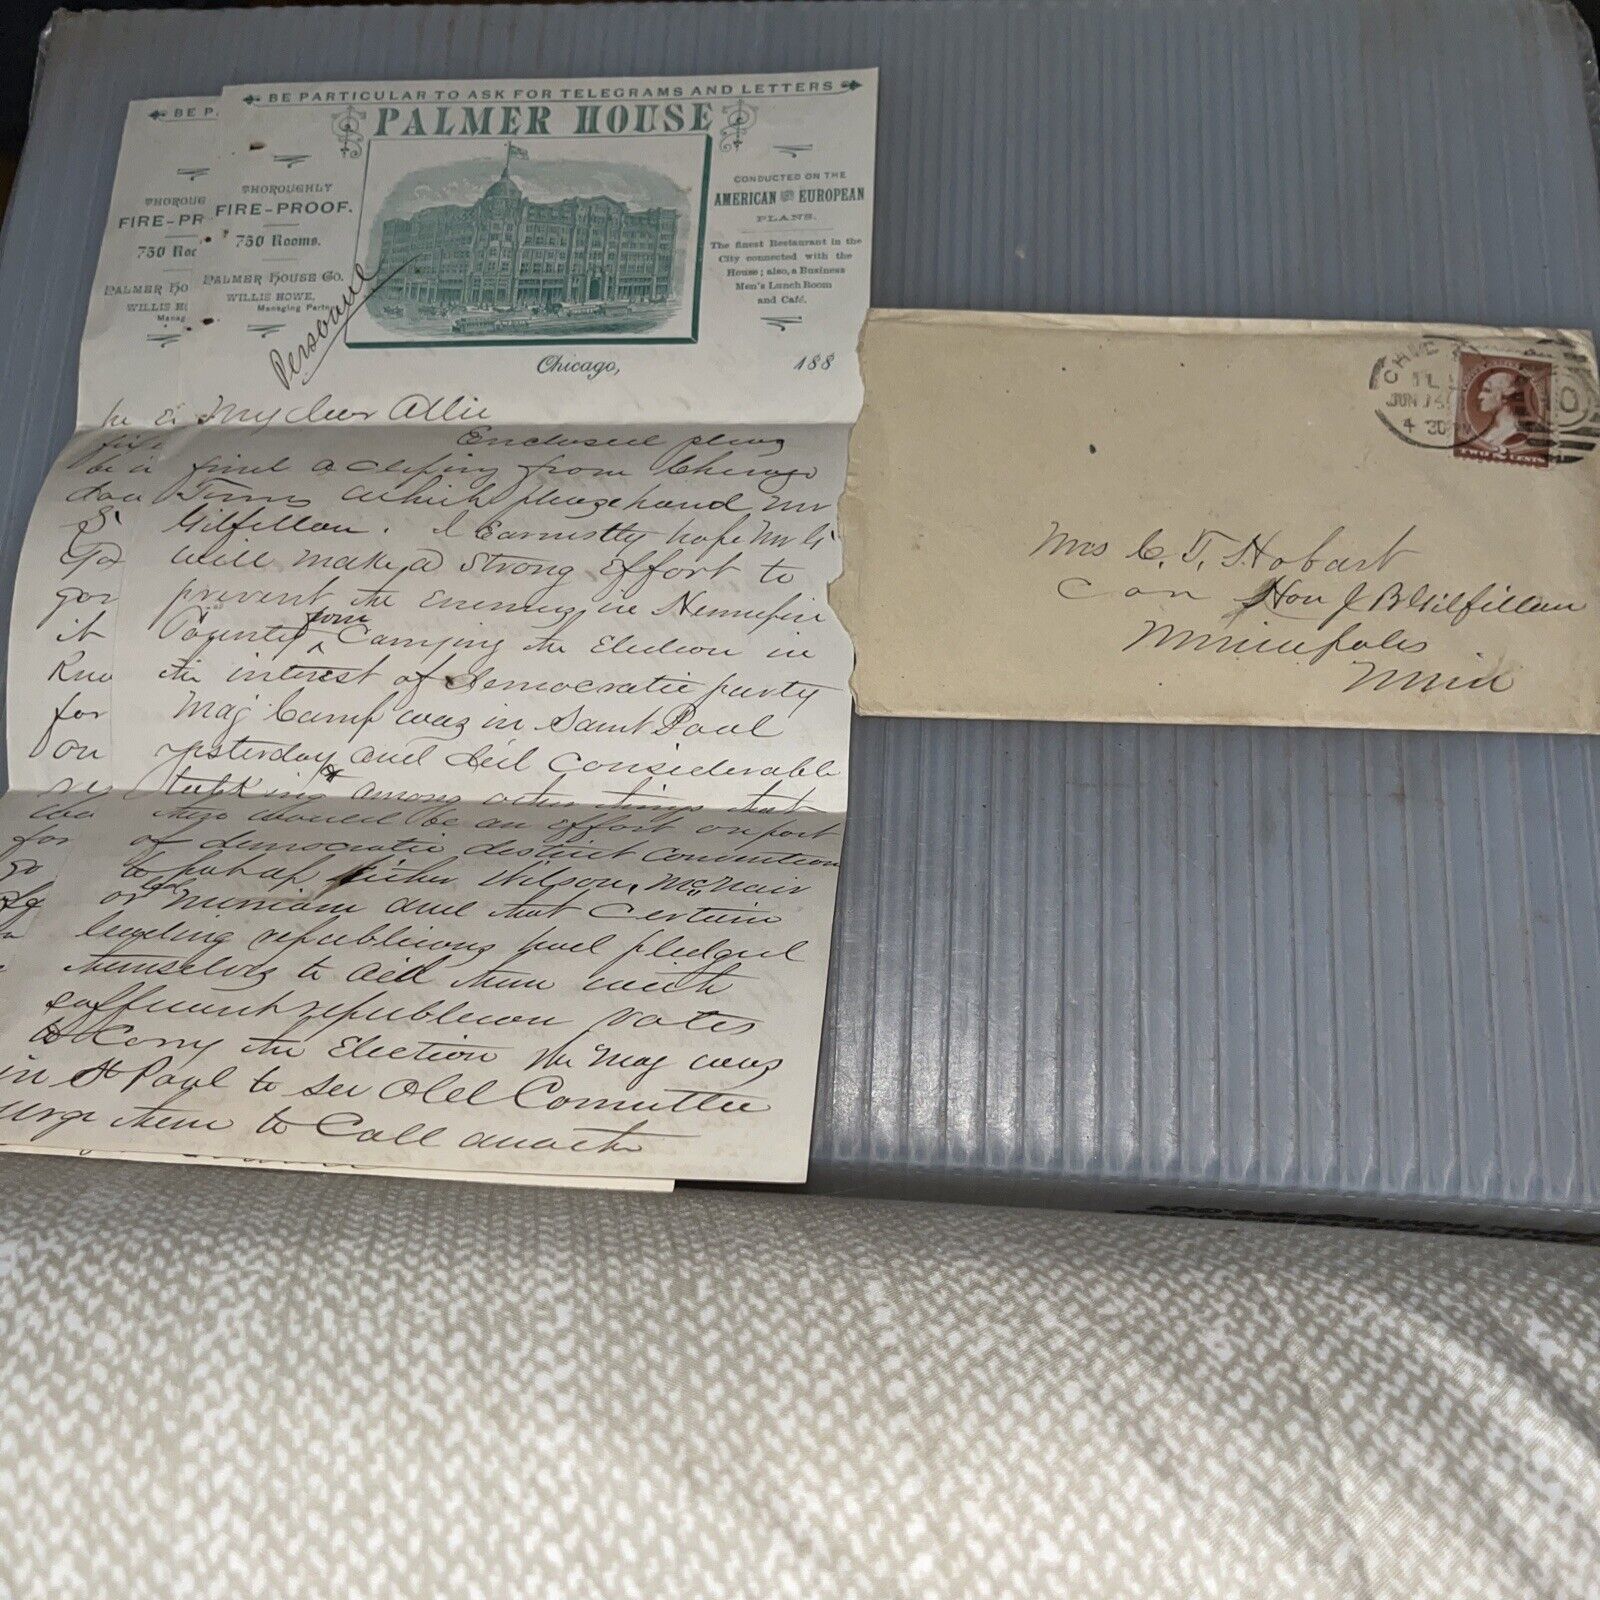 1884 Correspondence Congressman Gilfillan Palmer House Hotel Letterhead Chicago